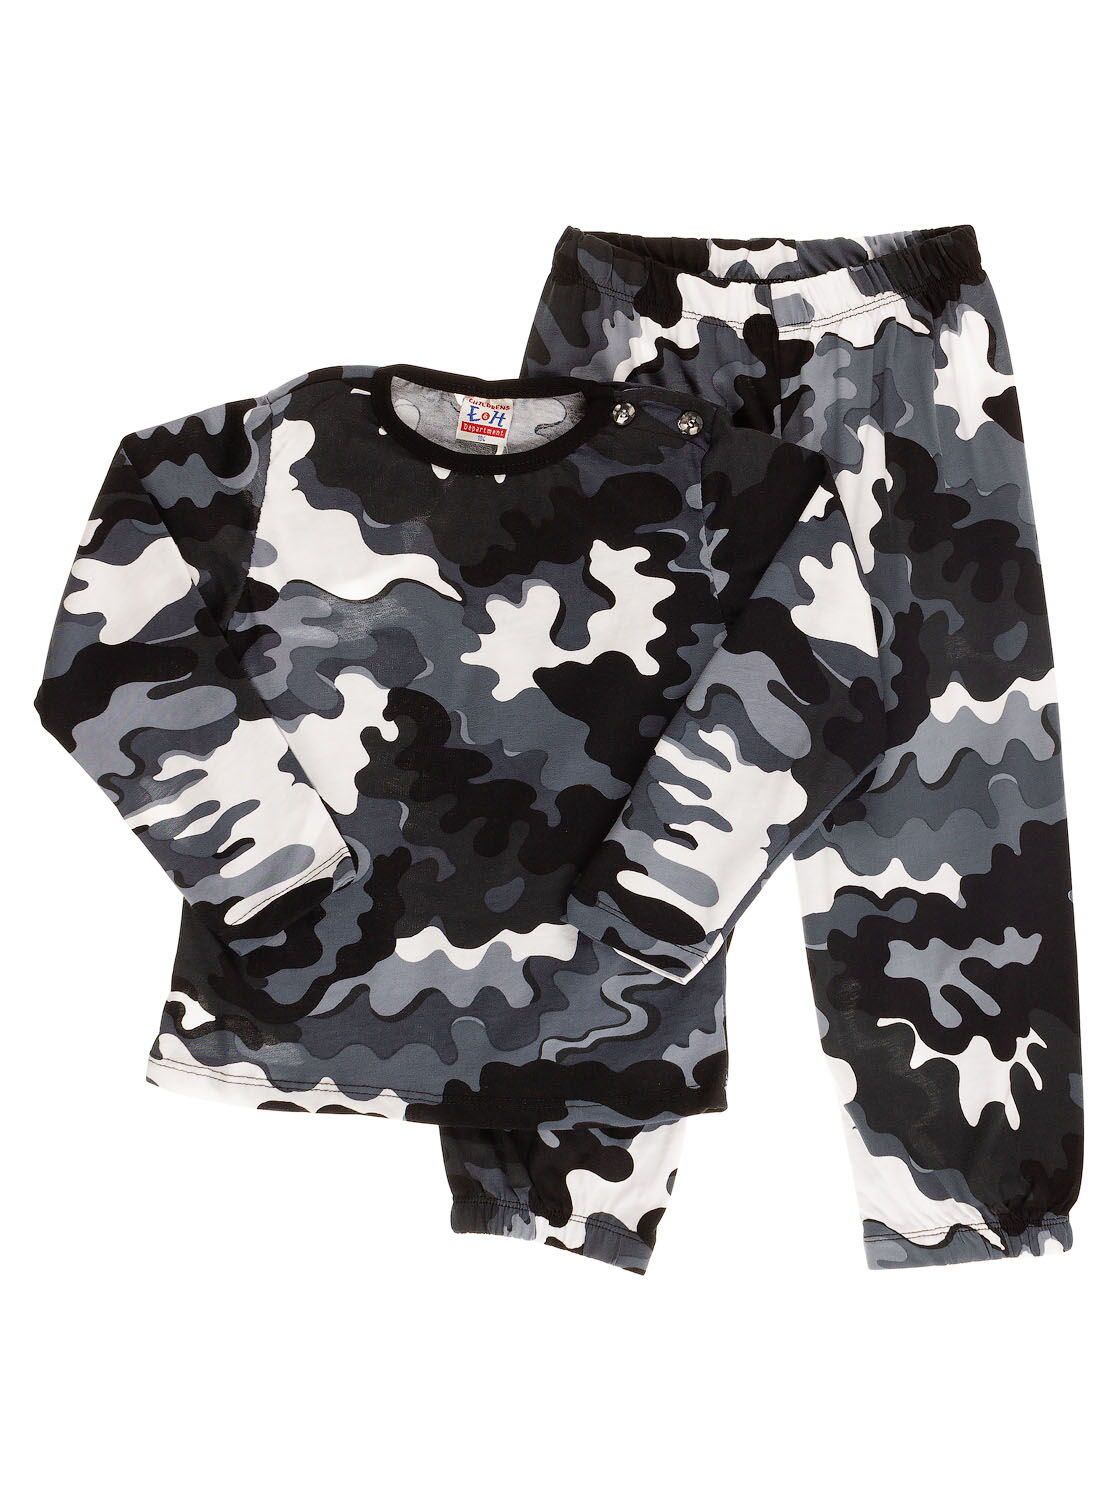 Пижама для мальчика Камуфляж черная 8382 - цена